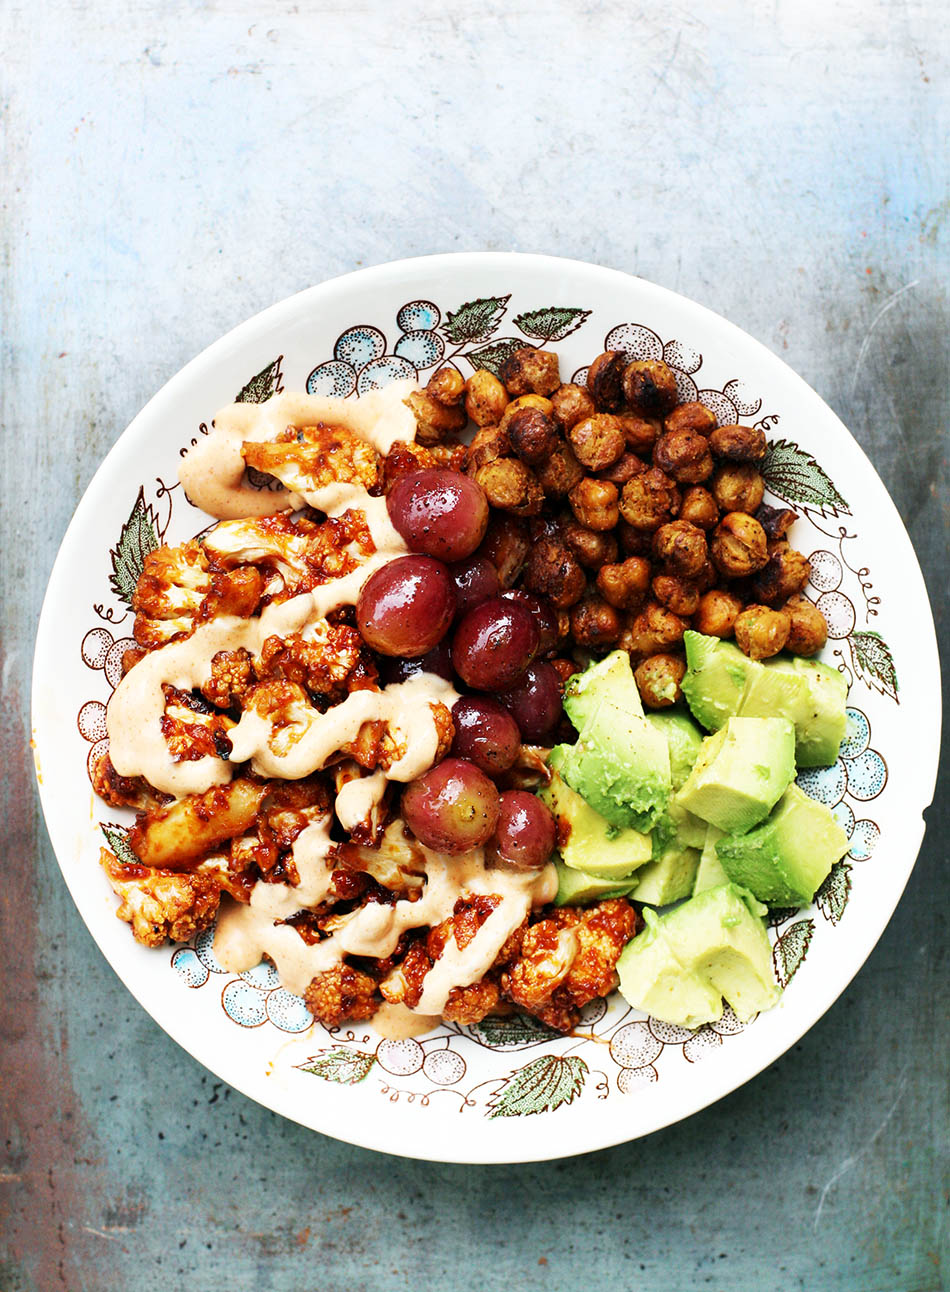 烤花椰菜、葡萄和鹰嘴豆碗:点击查看这道美味的素食食谱。